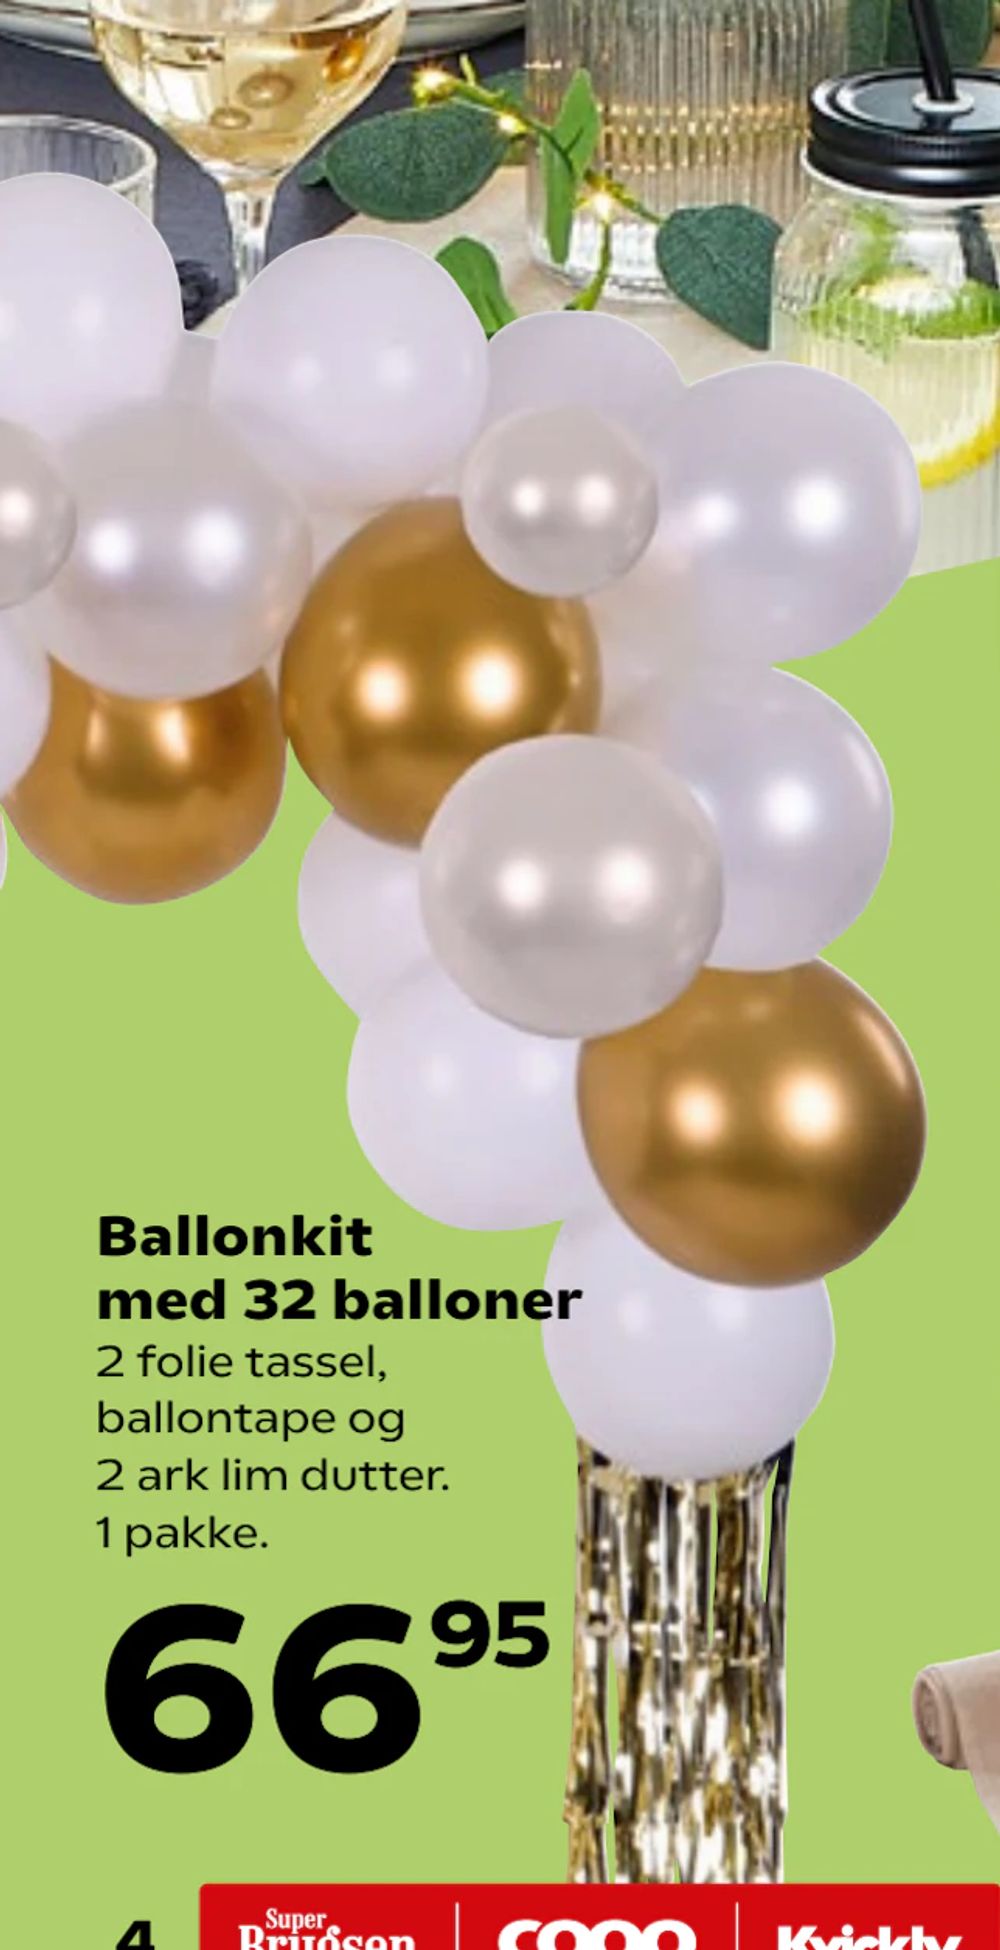 Tilbud på Ballonkit med 32 balloner fra Kvickly til 66,95 kr.